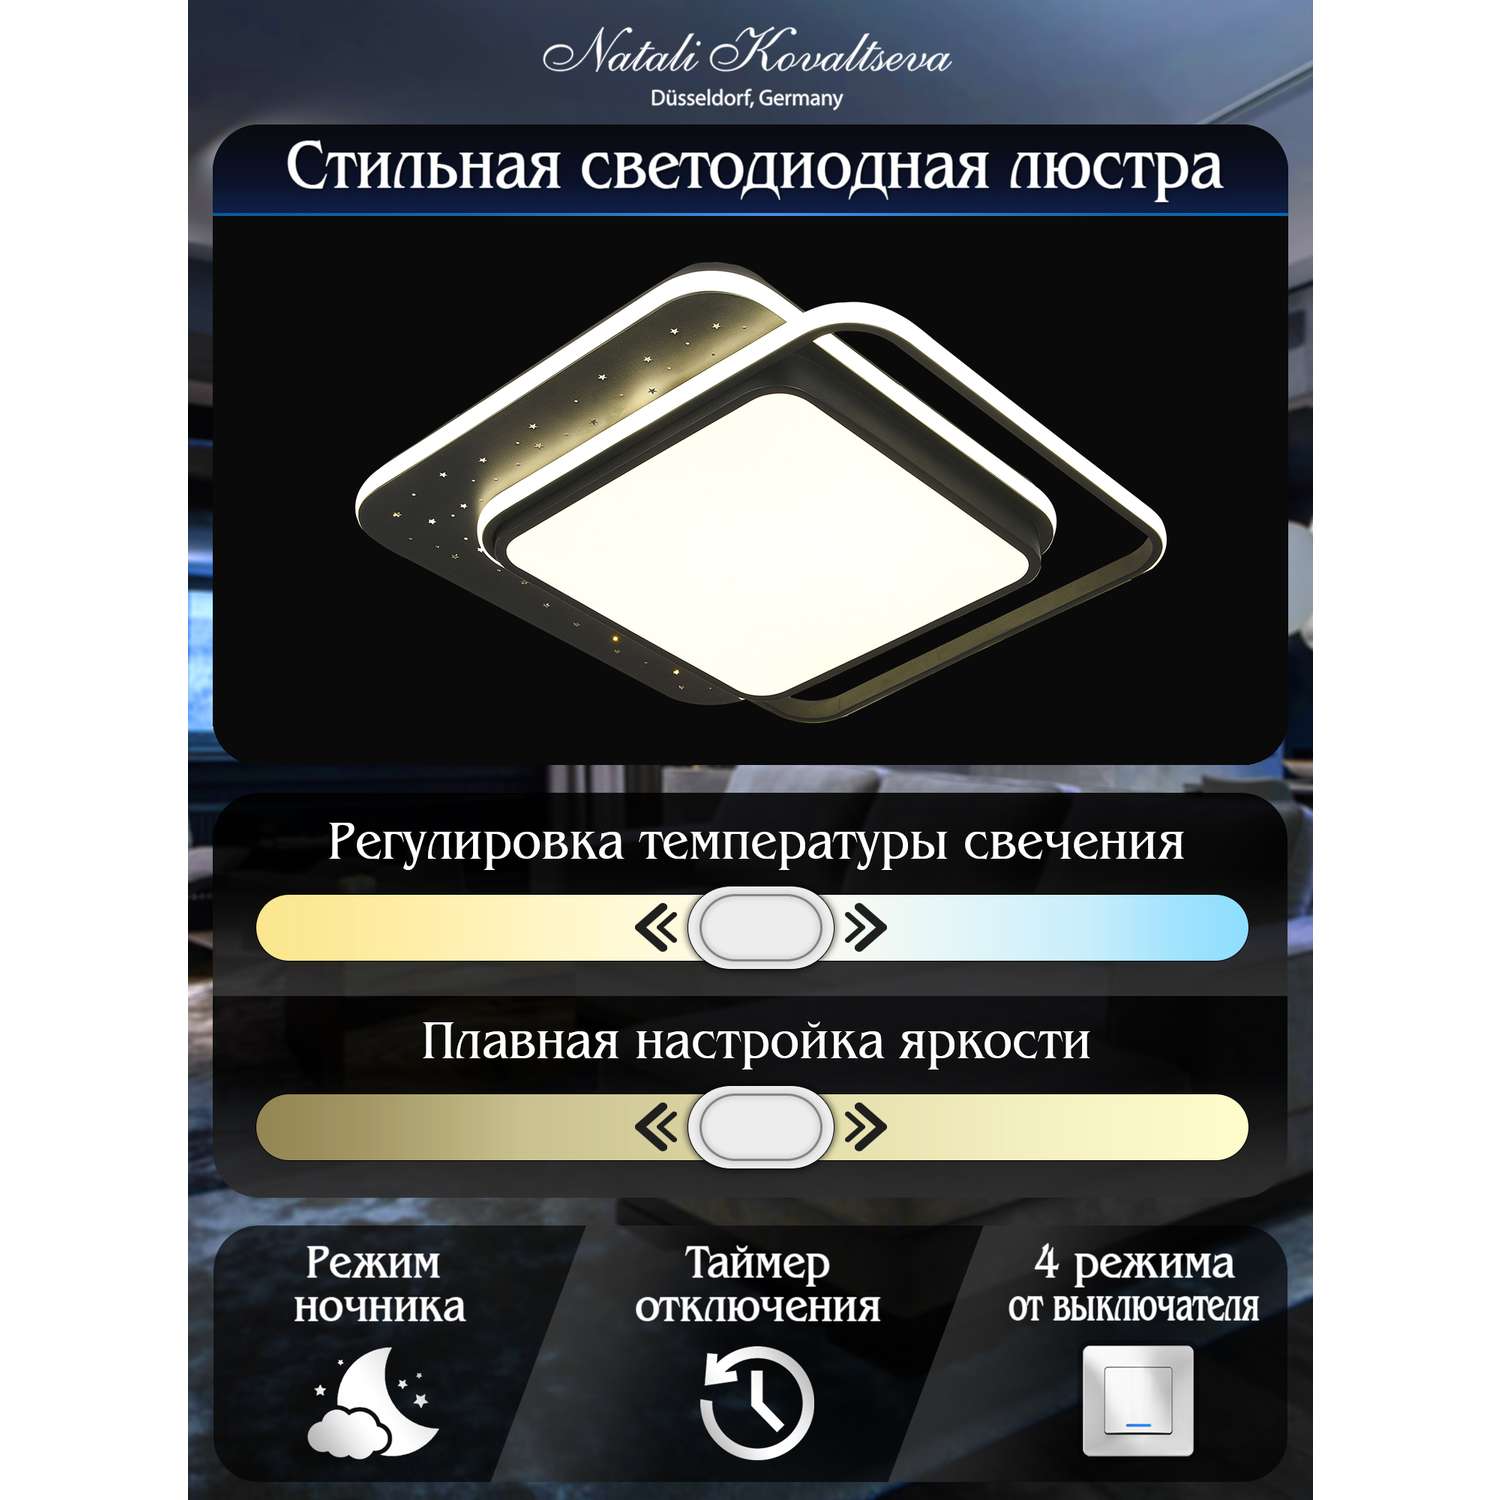 Светодиодный светильник NATALI KOVALTSEVA люстра 200W чёрный LED - фото 3